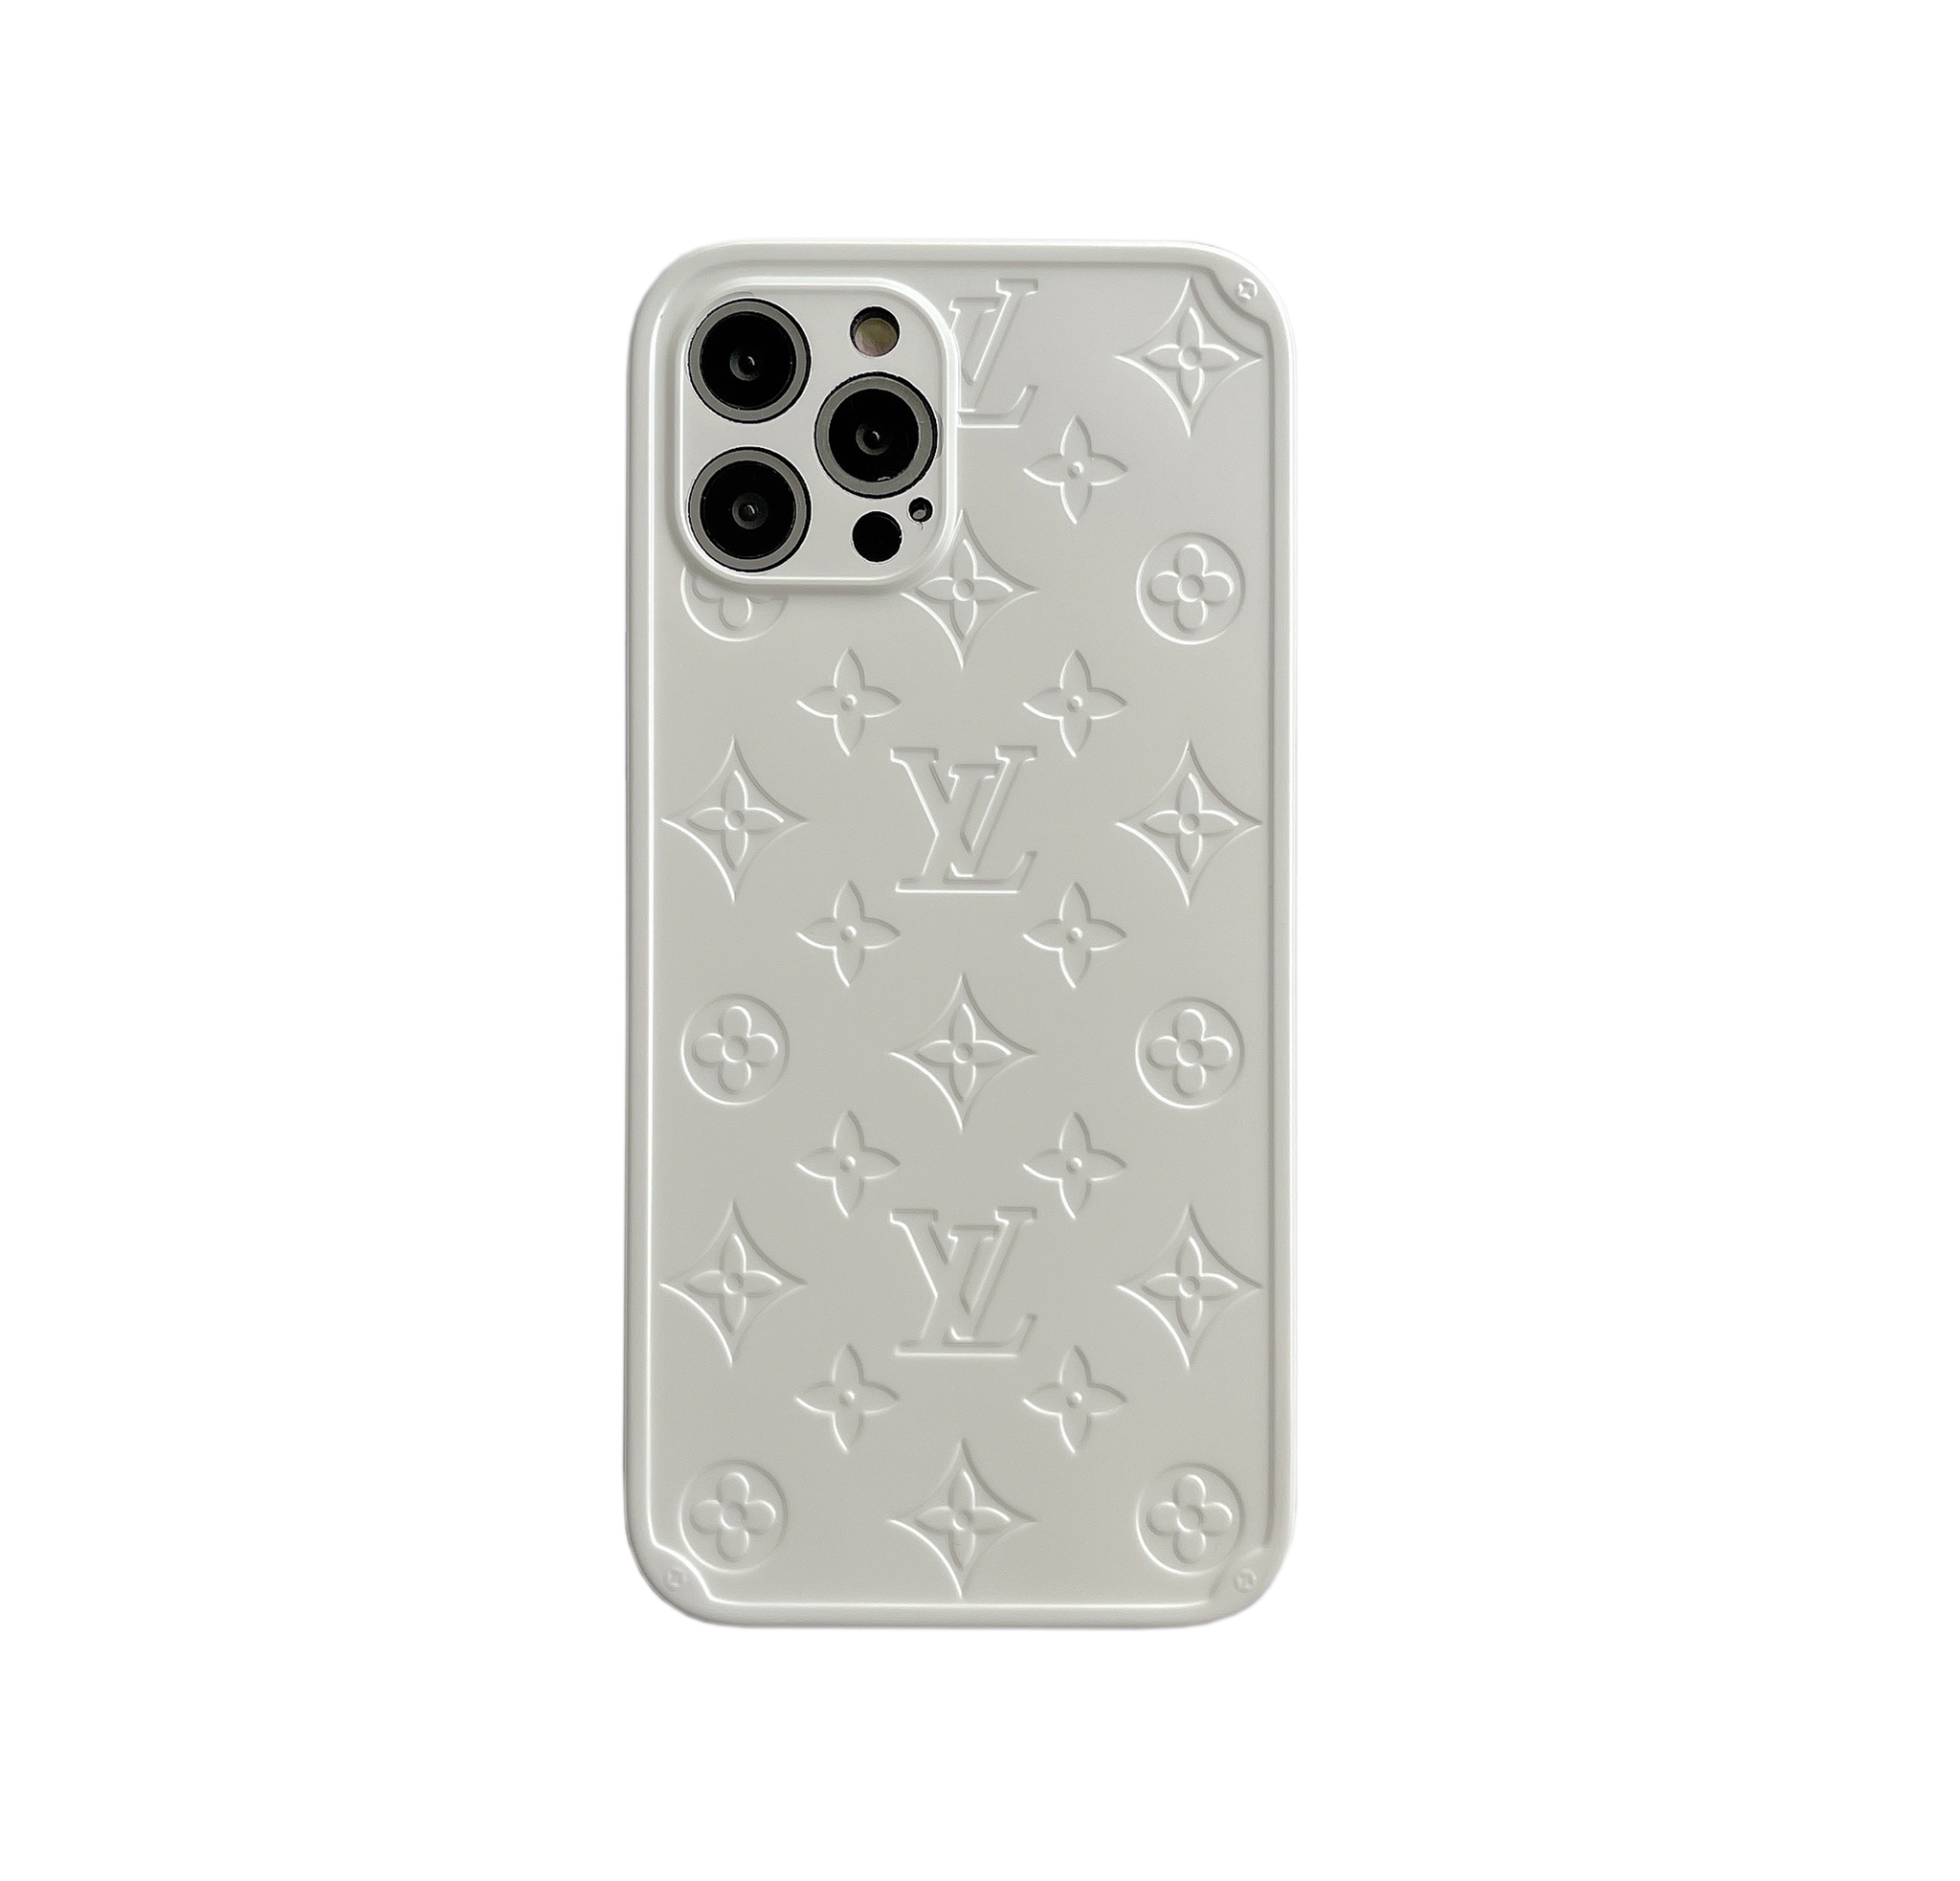 IPhone 11 Case - Louis Vuitton Black